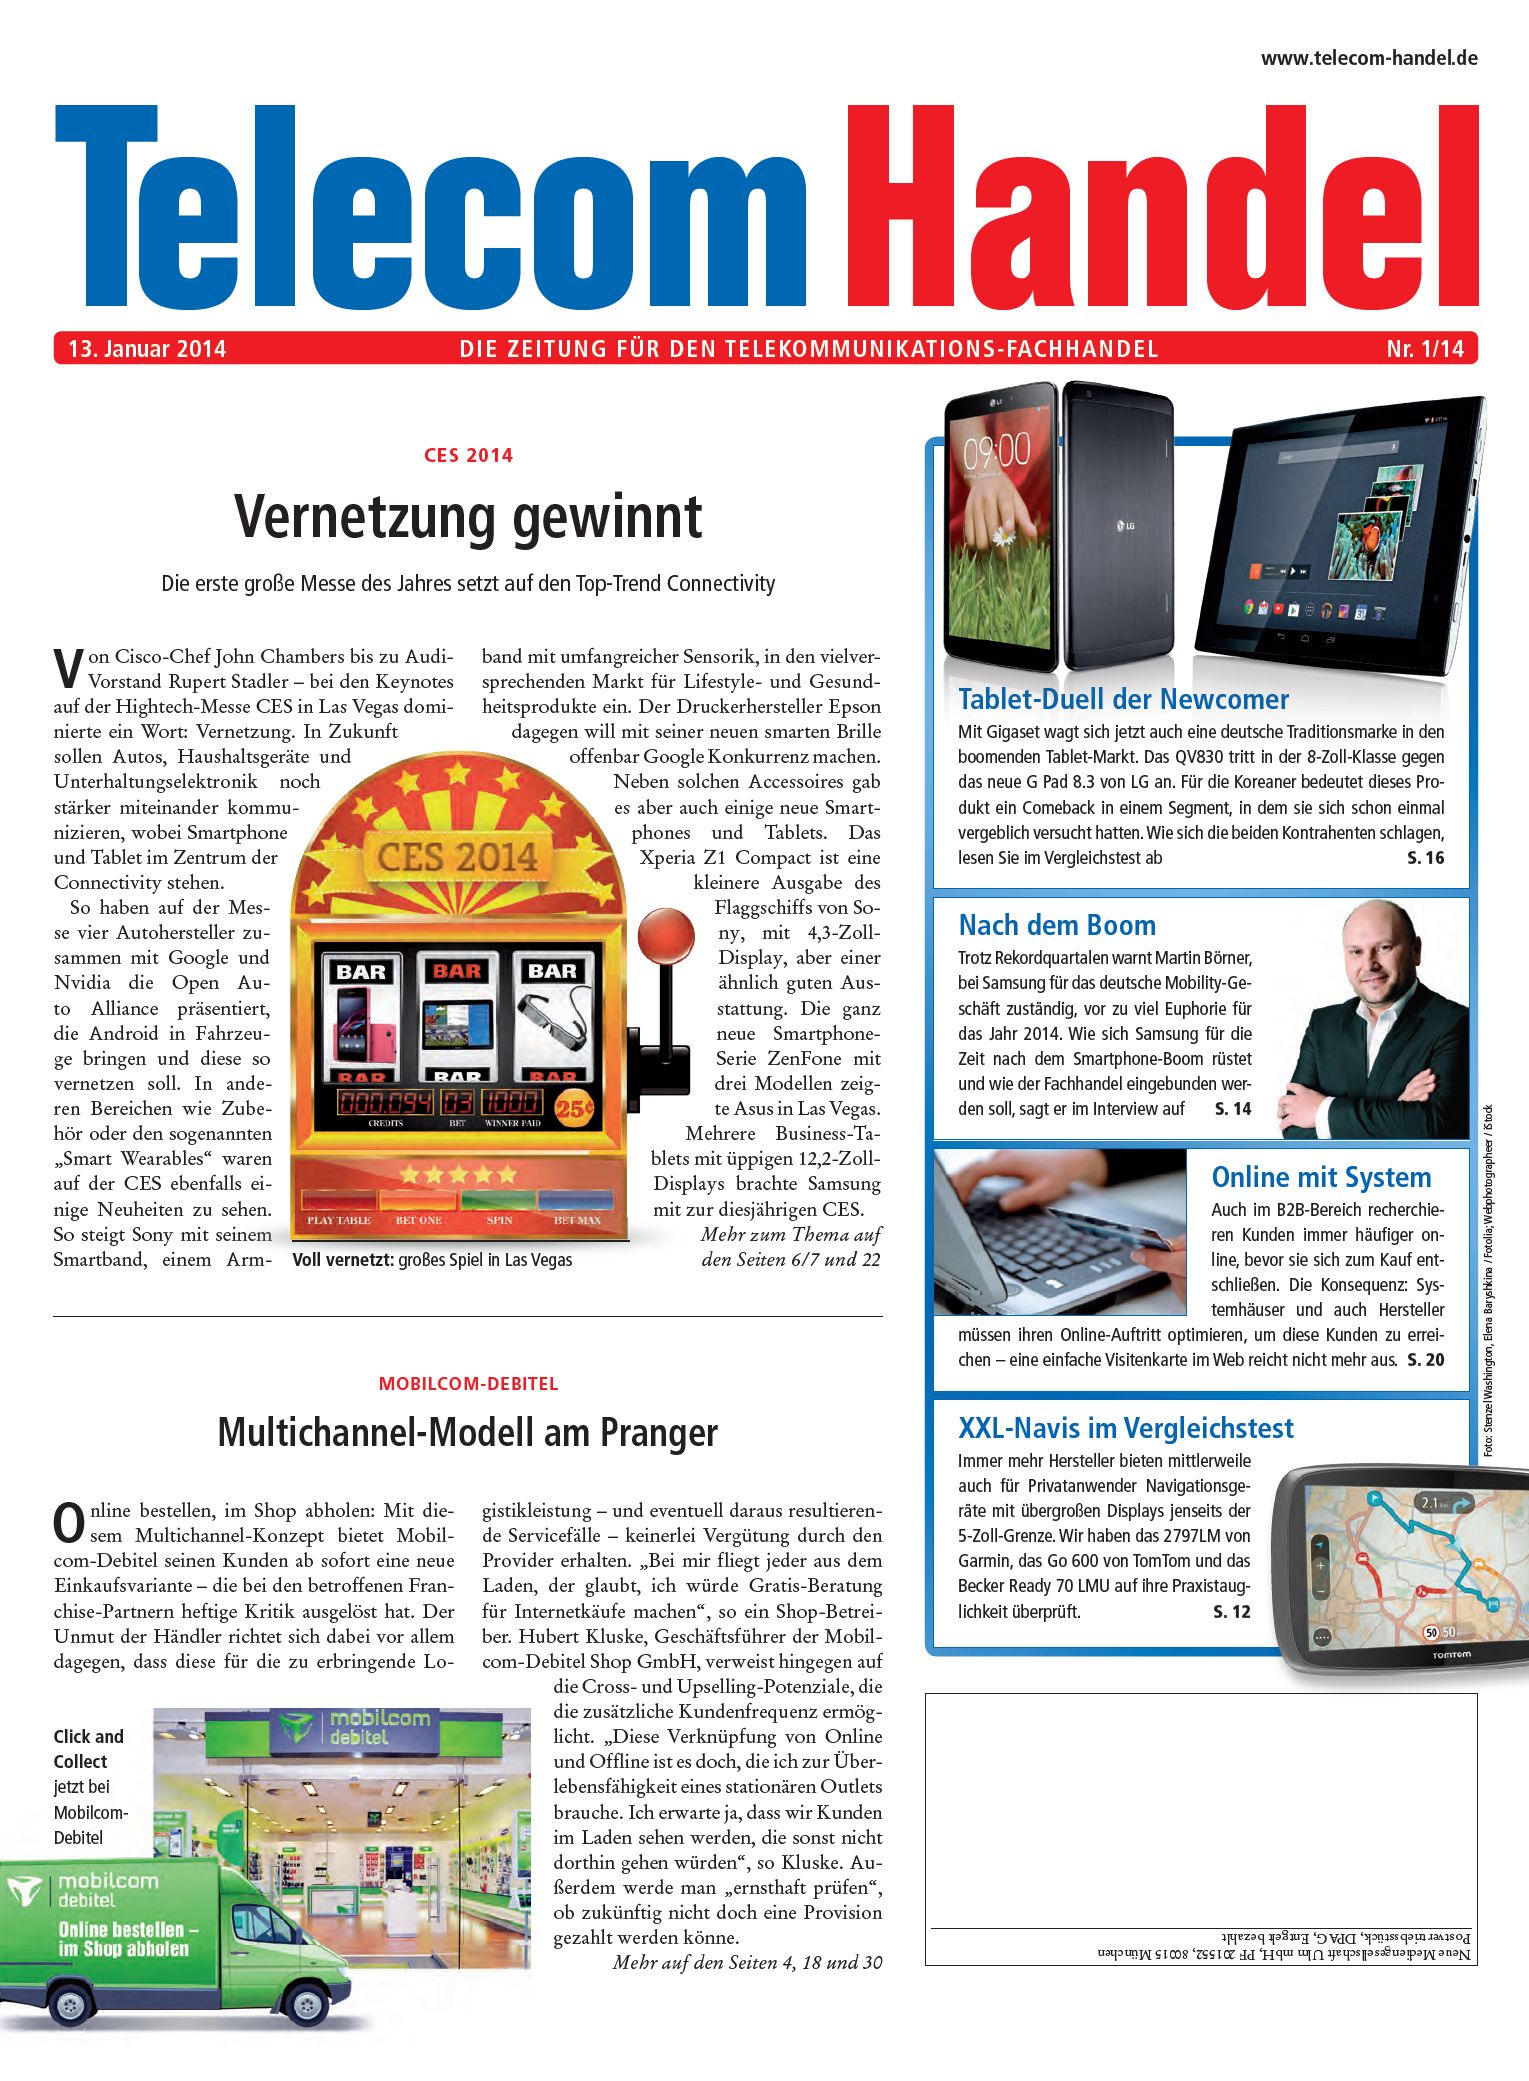 Telecom Handel Ausgabe 01/2014